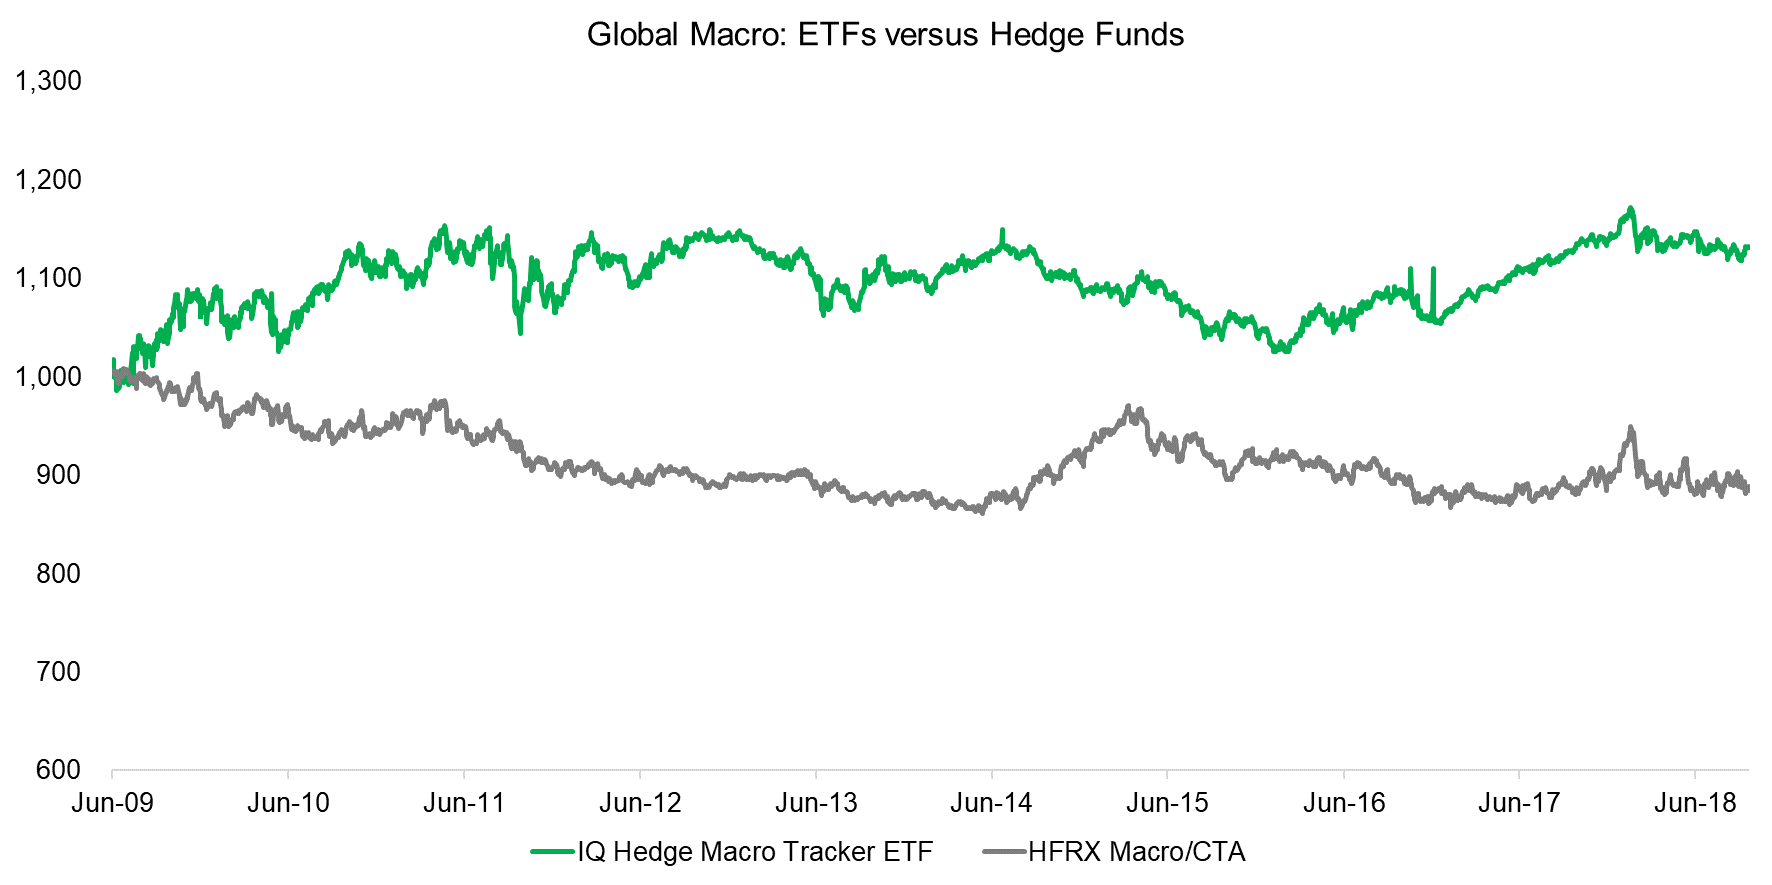 Global Macro ETFs versus Hedge Funds